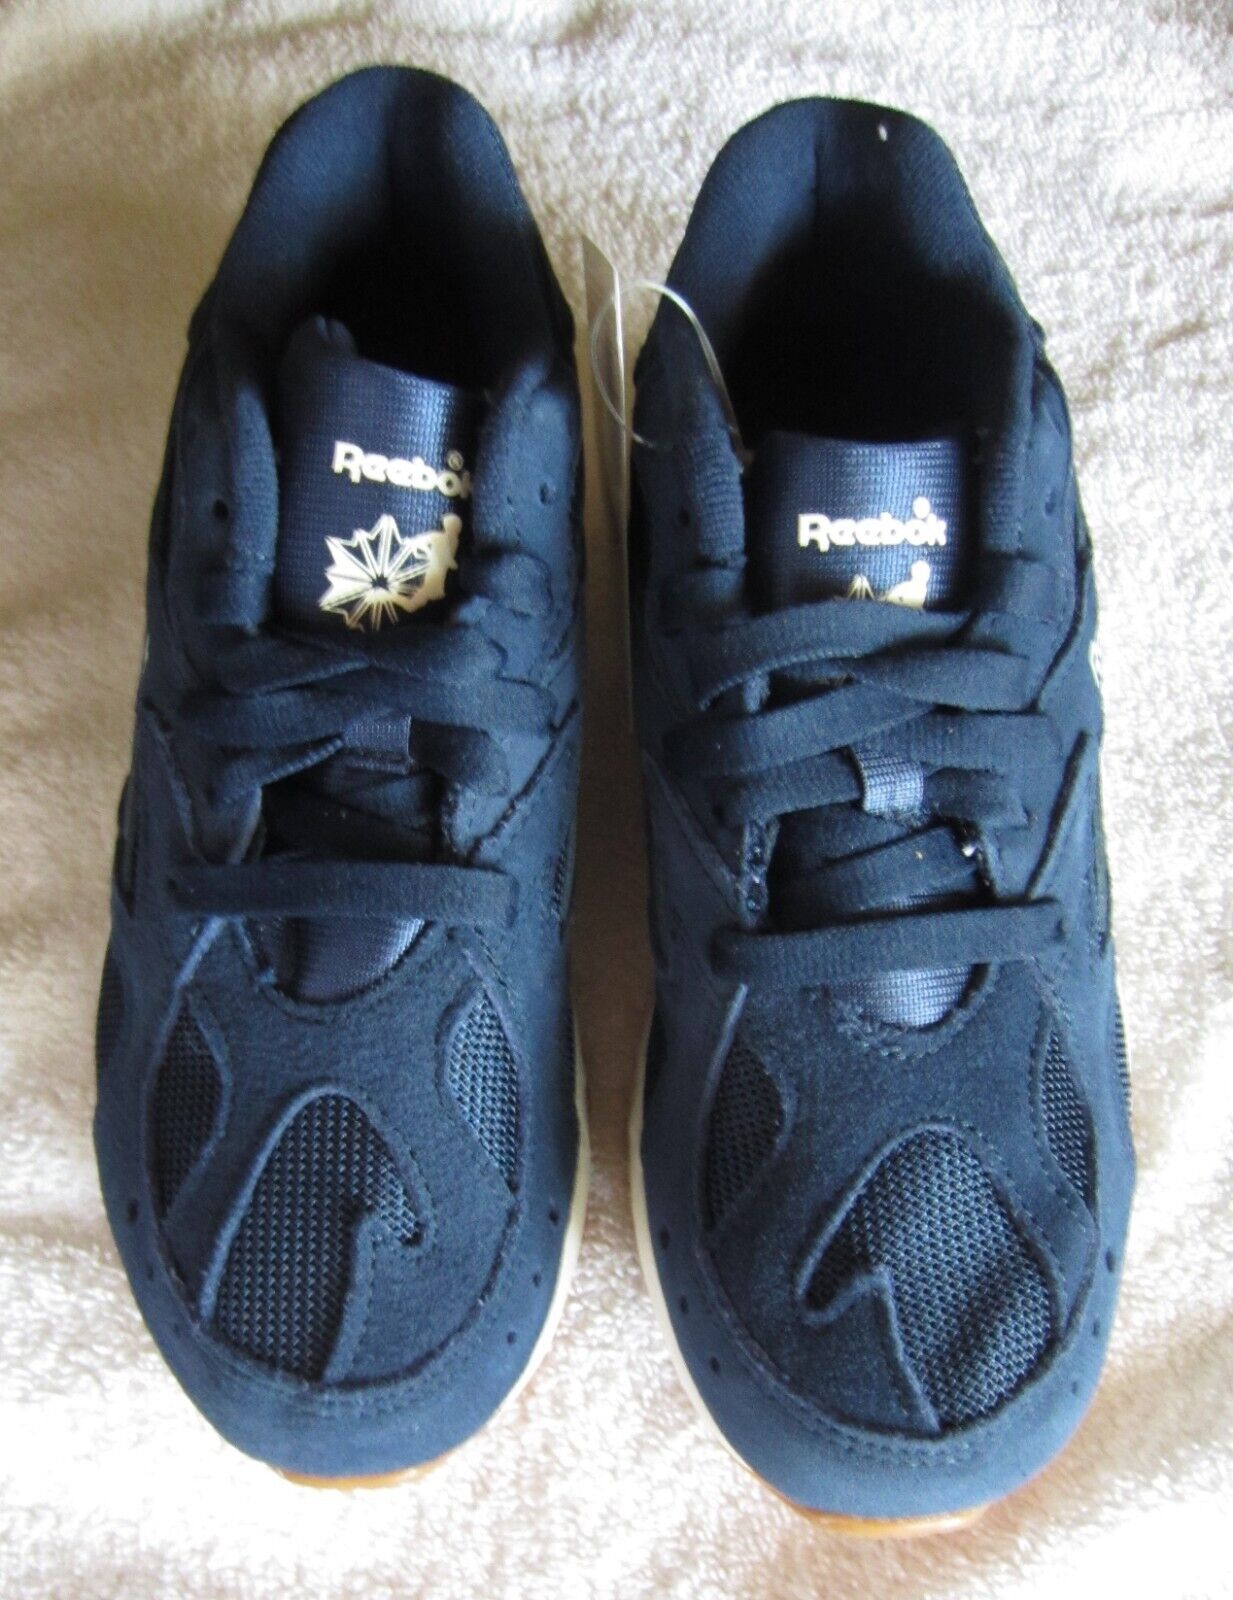 Diariamente Brisa de madera Reebok Aztrek 93,unisex,running shoes,blue/chalk,suede/textile uppers,M 4,  W5.5 | eBay